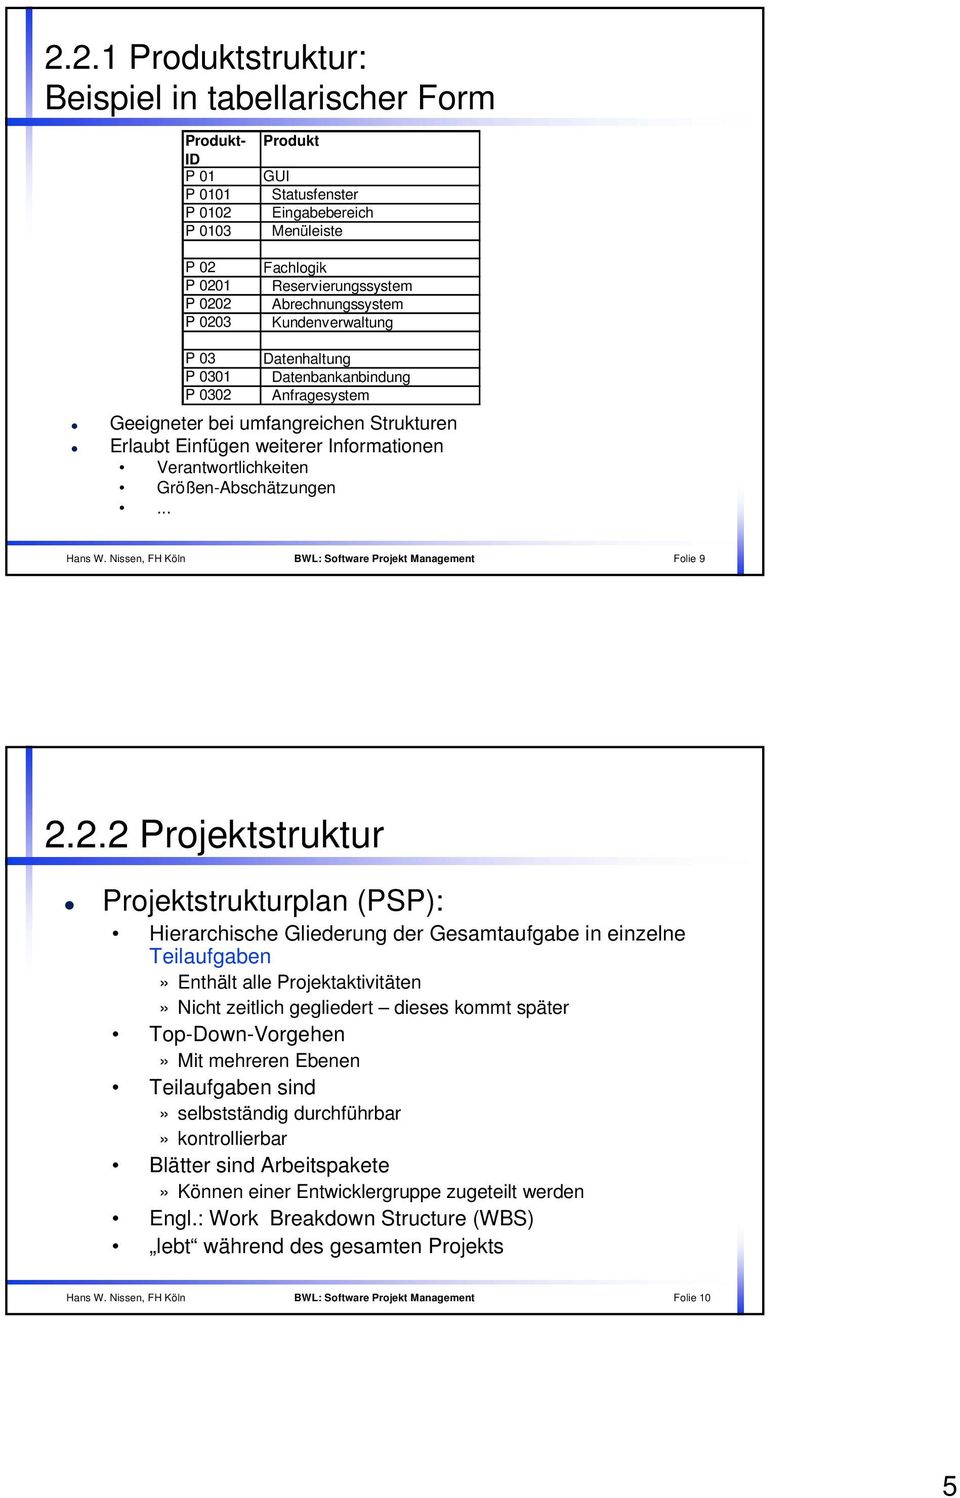 Verantwortlichkeiten Größen-Abschätzungen... Hans W. Nissen, FH Köln BWL: Software Projekt Management Folie 9 2.